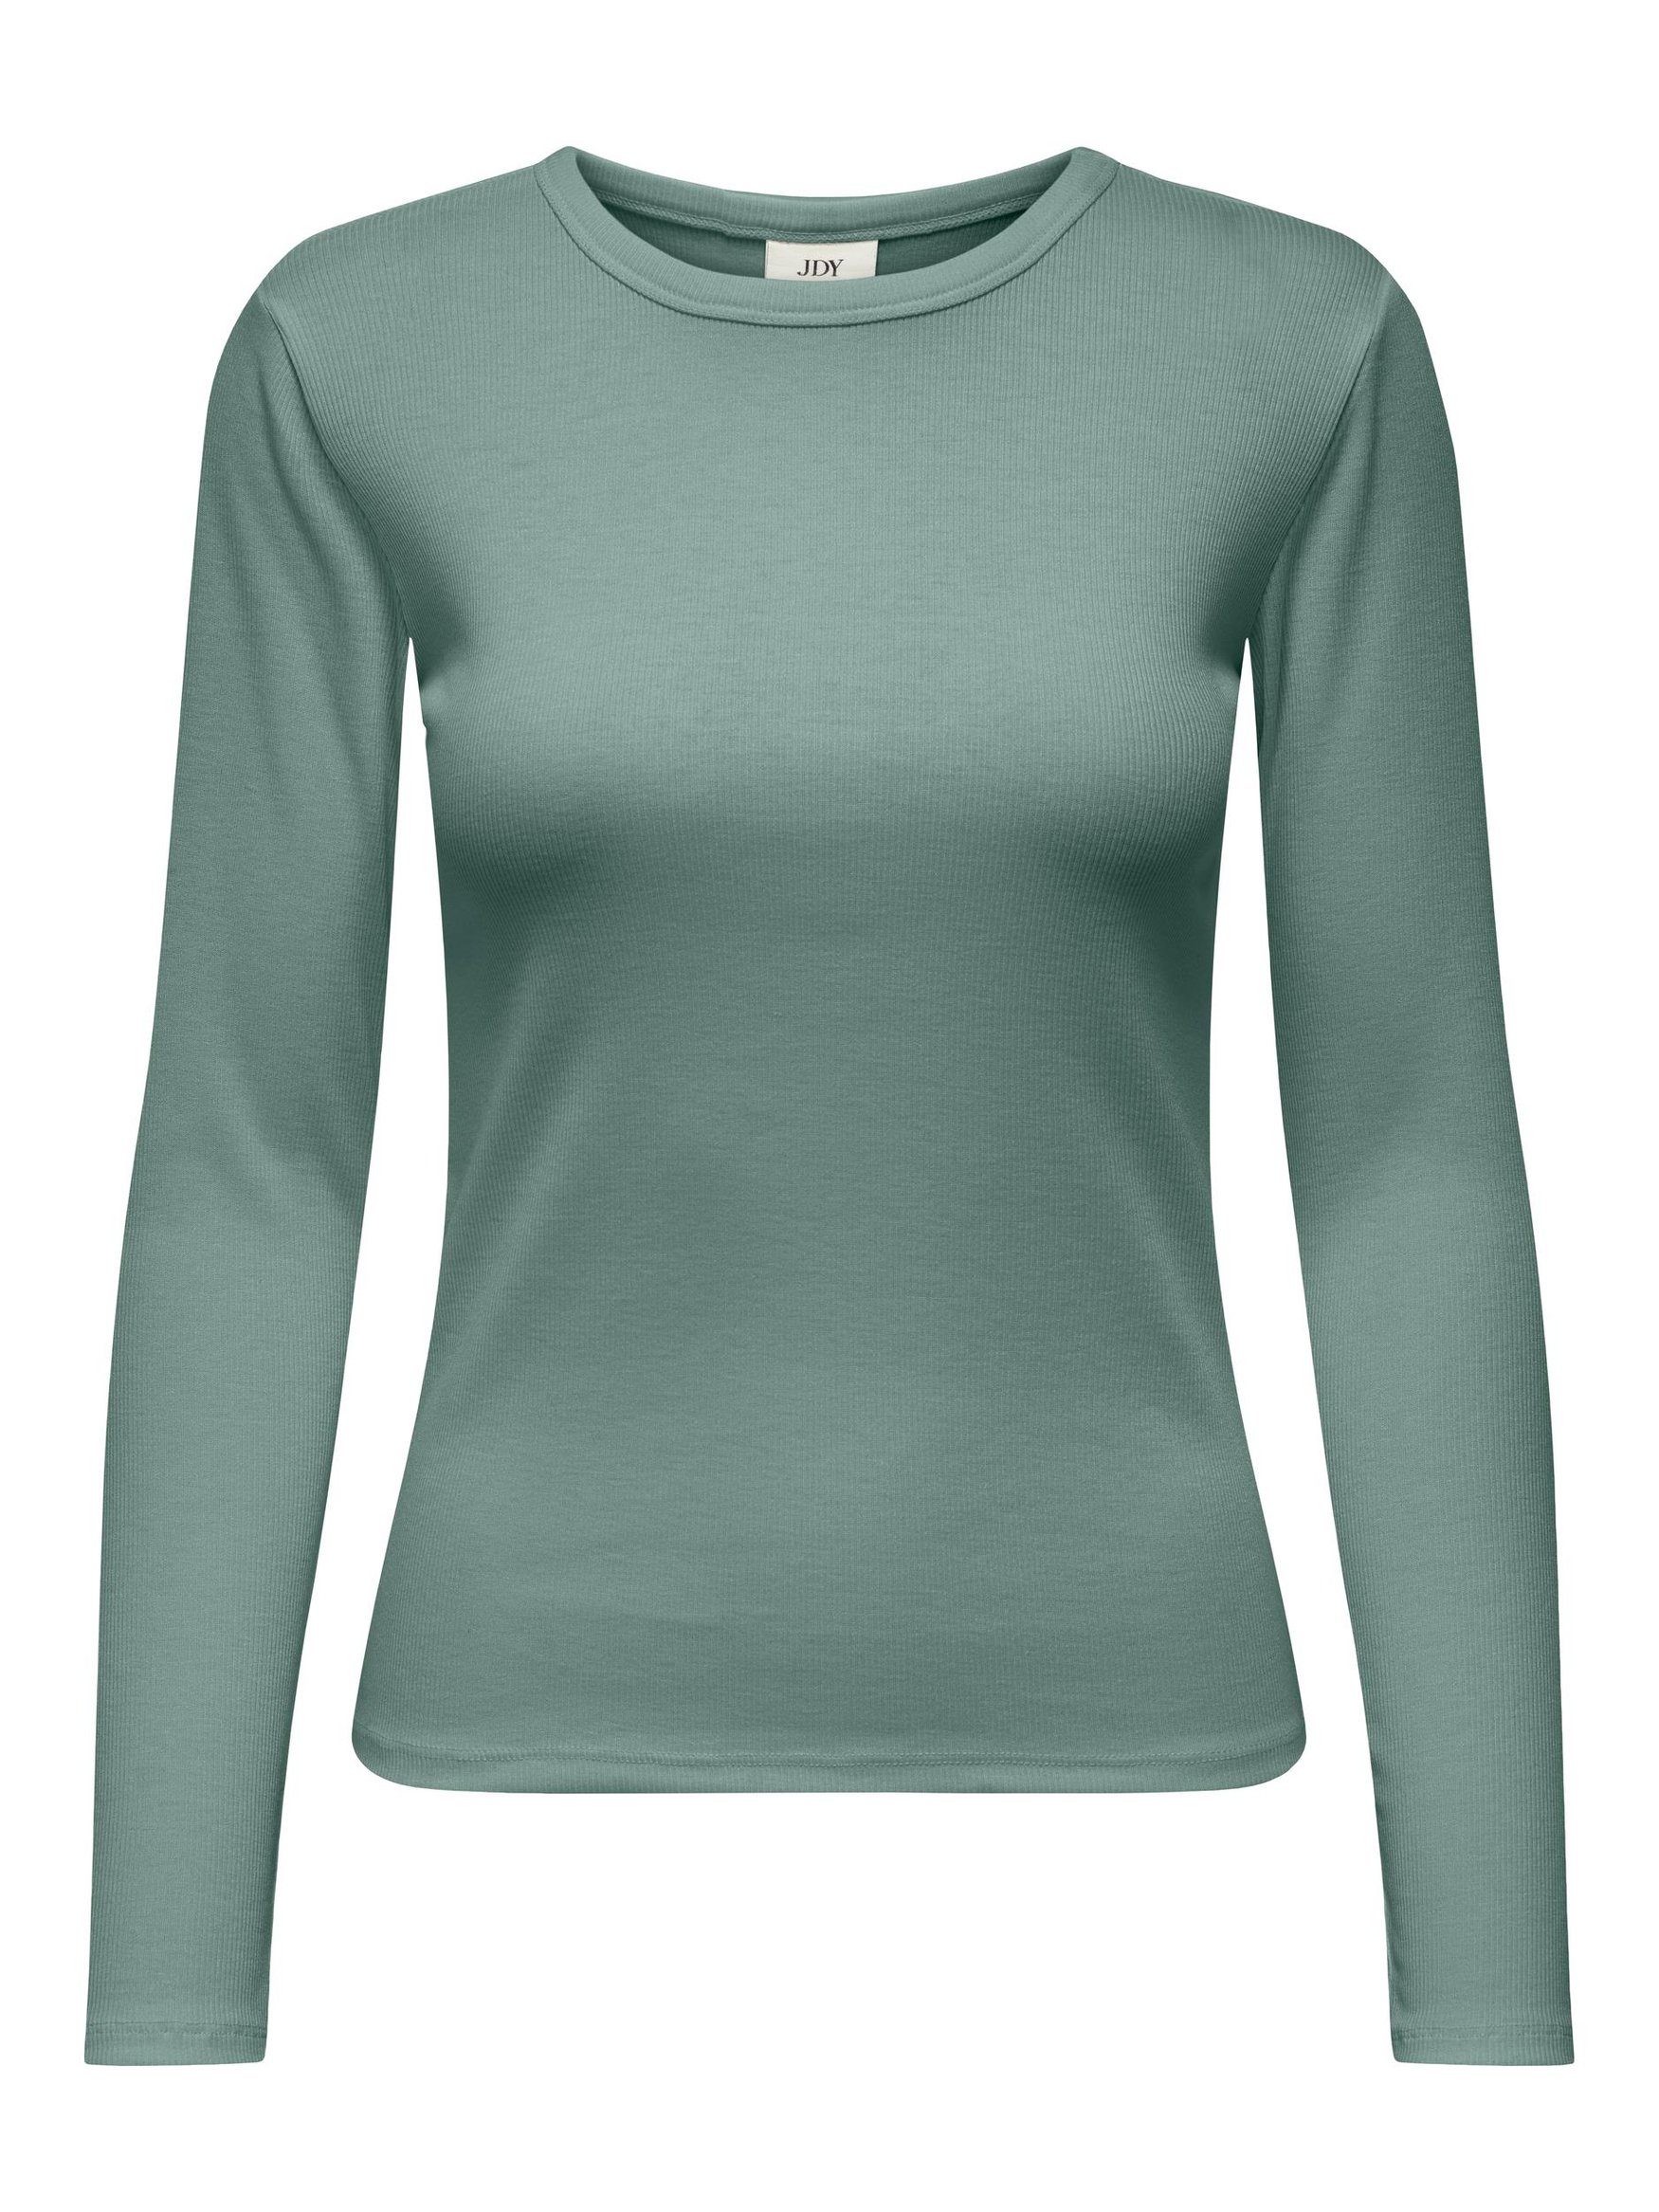 OTTO | online Damen grüne Gestreifte kaufen Shirts für